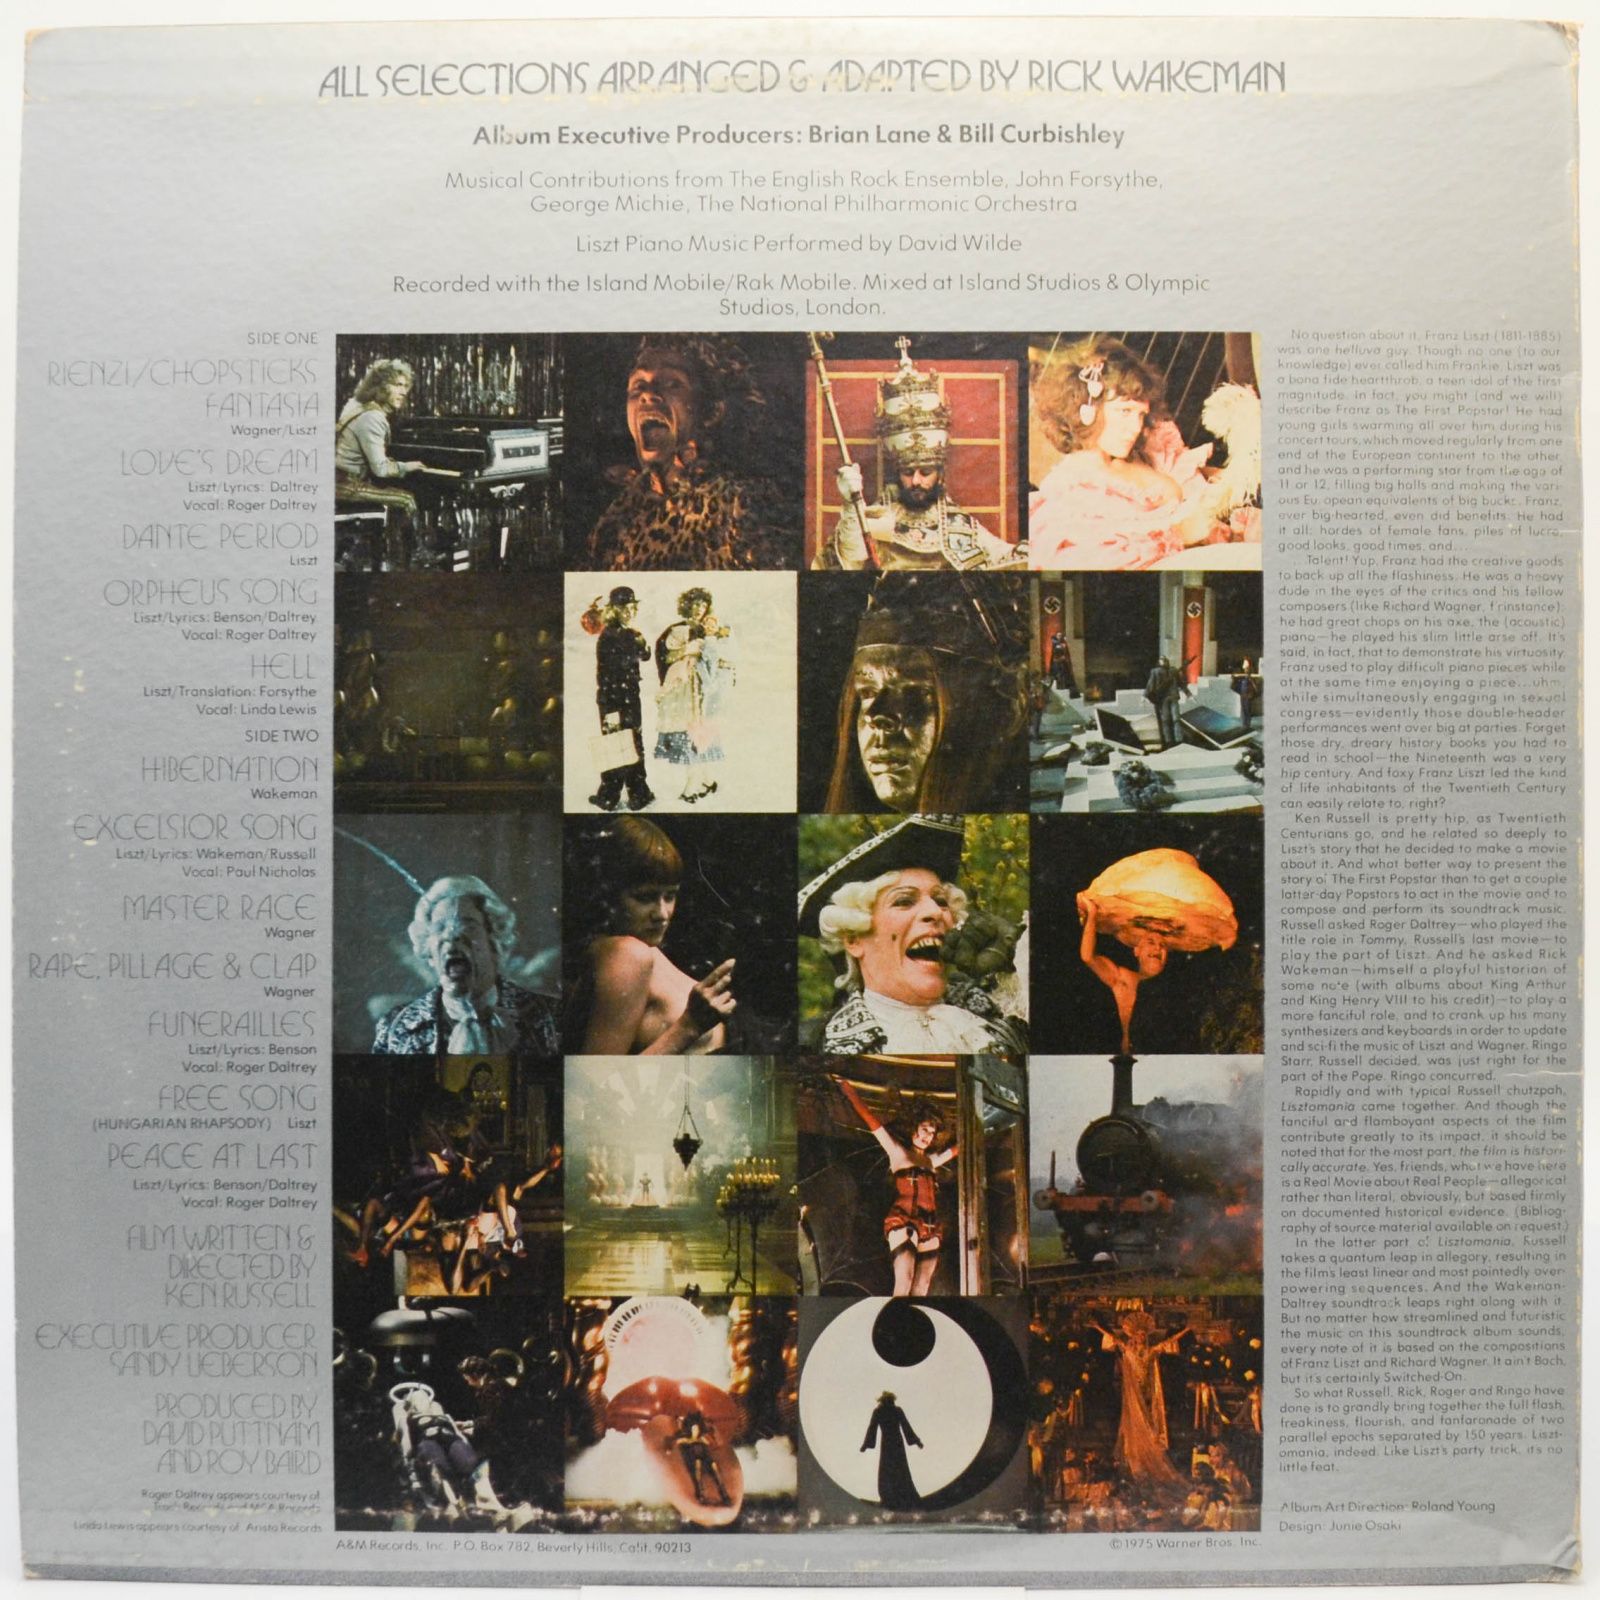 Rick Wakeman — Lisztomania (USA), 1975